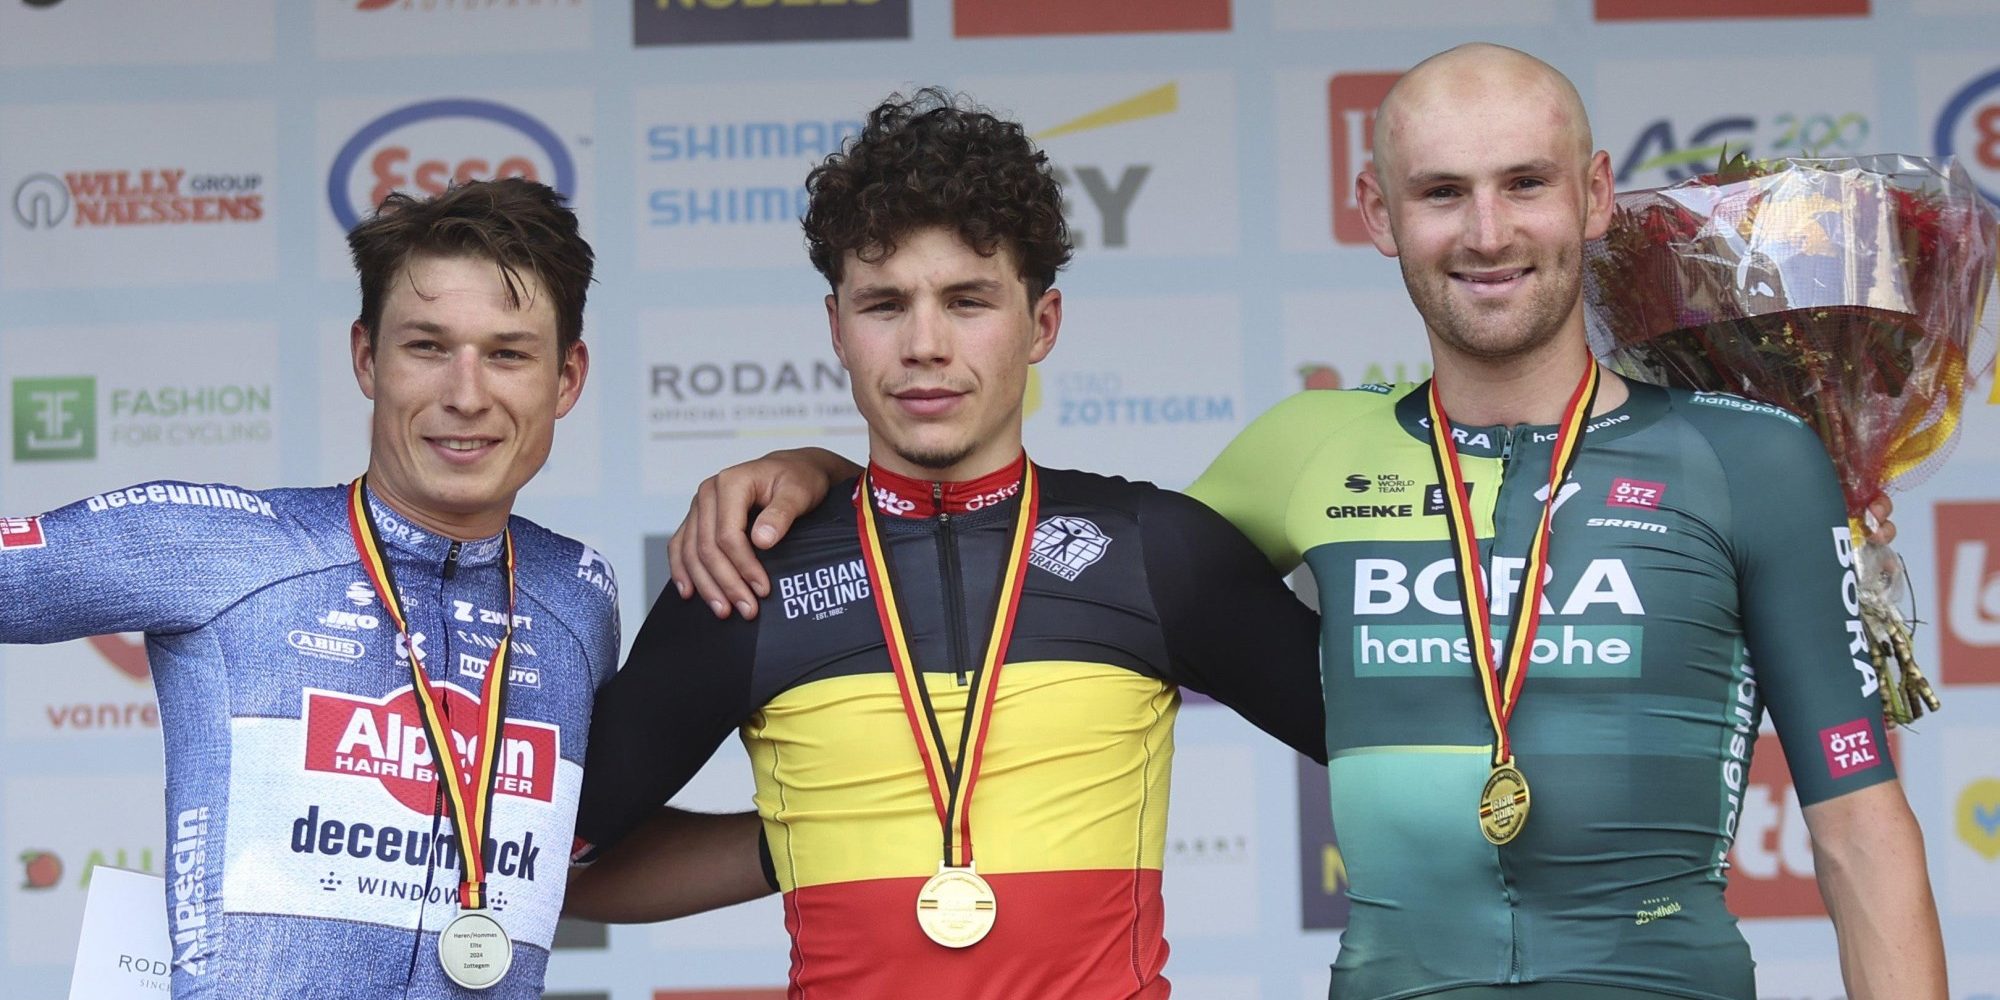 Geen Tour en Vuelta voor Jordi Meeus na BK-brons: “Lastig als je alleen in koers bent”